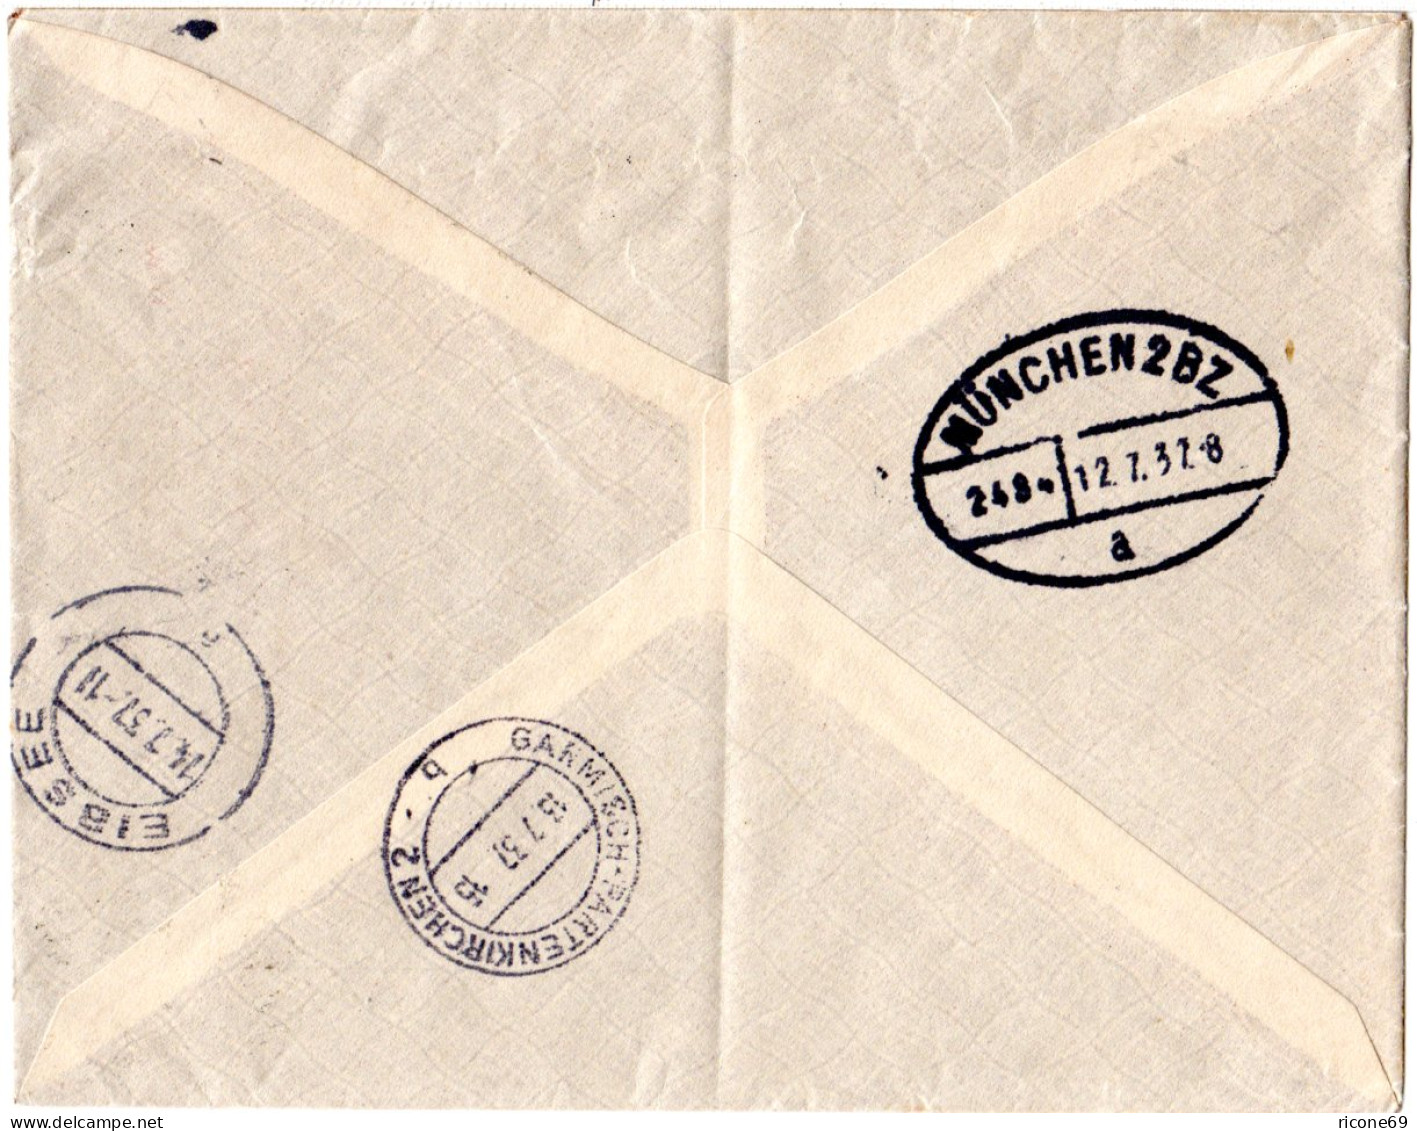 Brasilien 1937, 5000+600 R. Auf Luftpost Einschreiben Drucksache N. Deutschland. - Covers & Documents